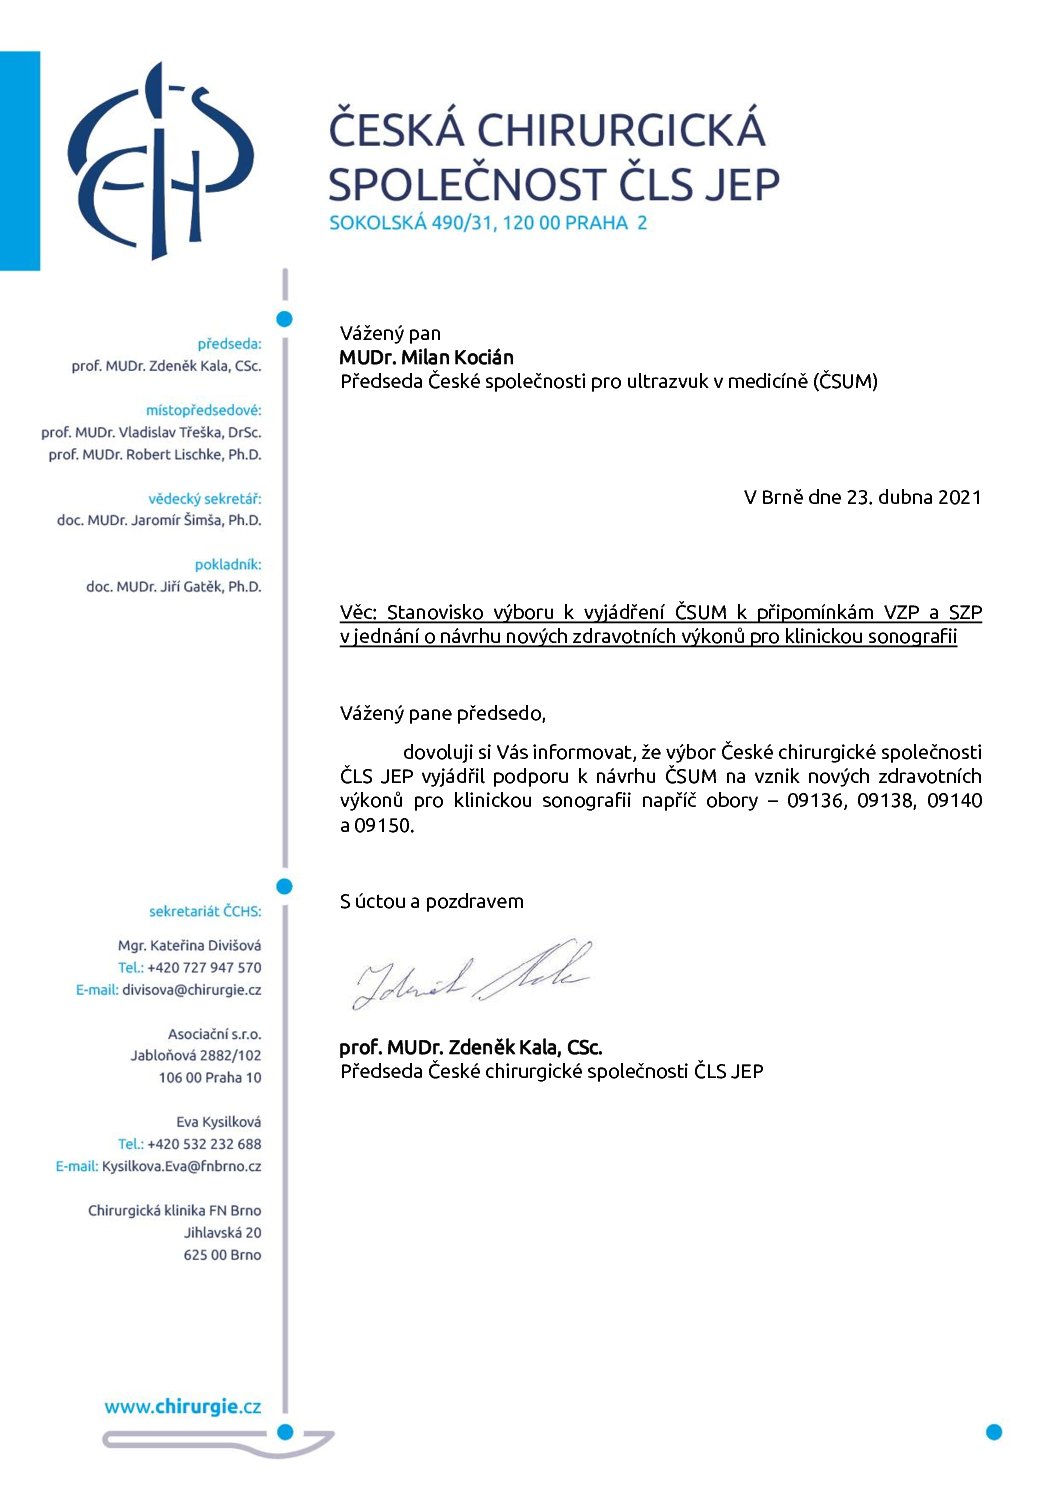 Stanovisko výboru ČCHS ČLS JEP k novým zdravotním výkonům pro klinickou sonografii (23. 4. 2021)